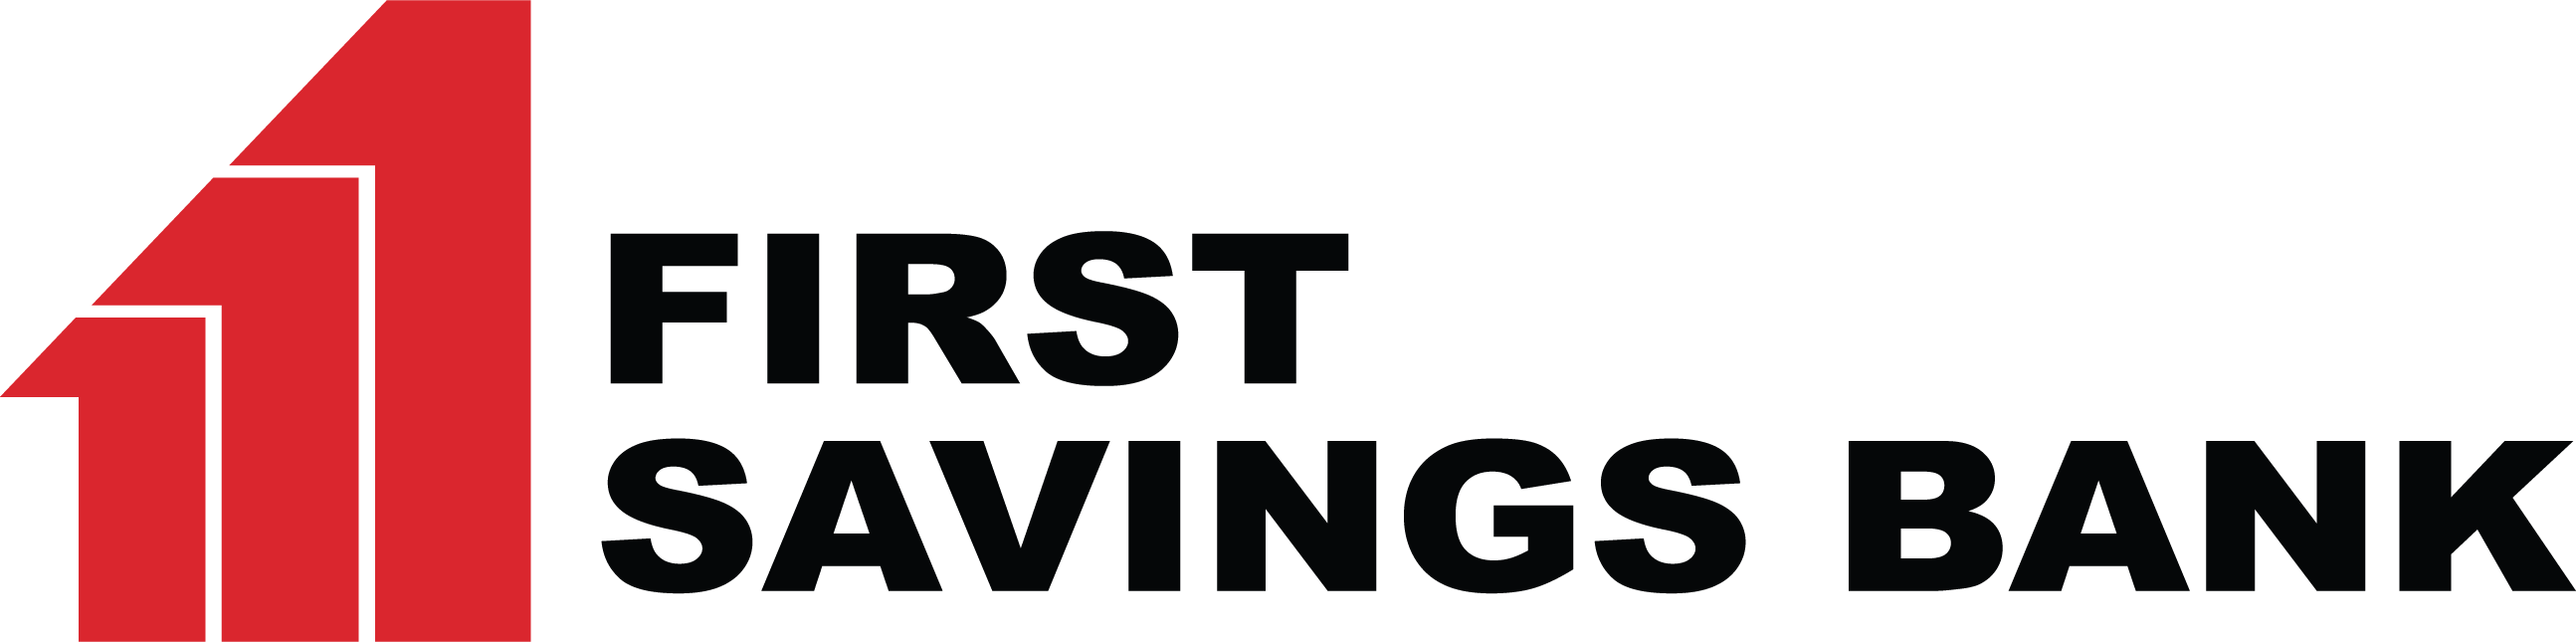 First Savings Bank logo